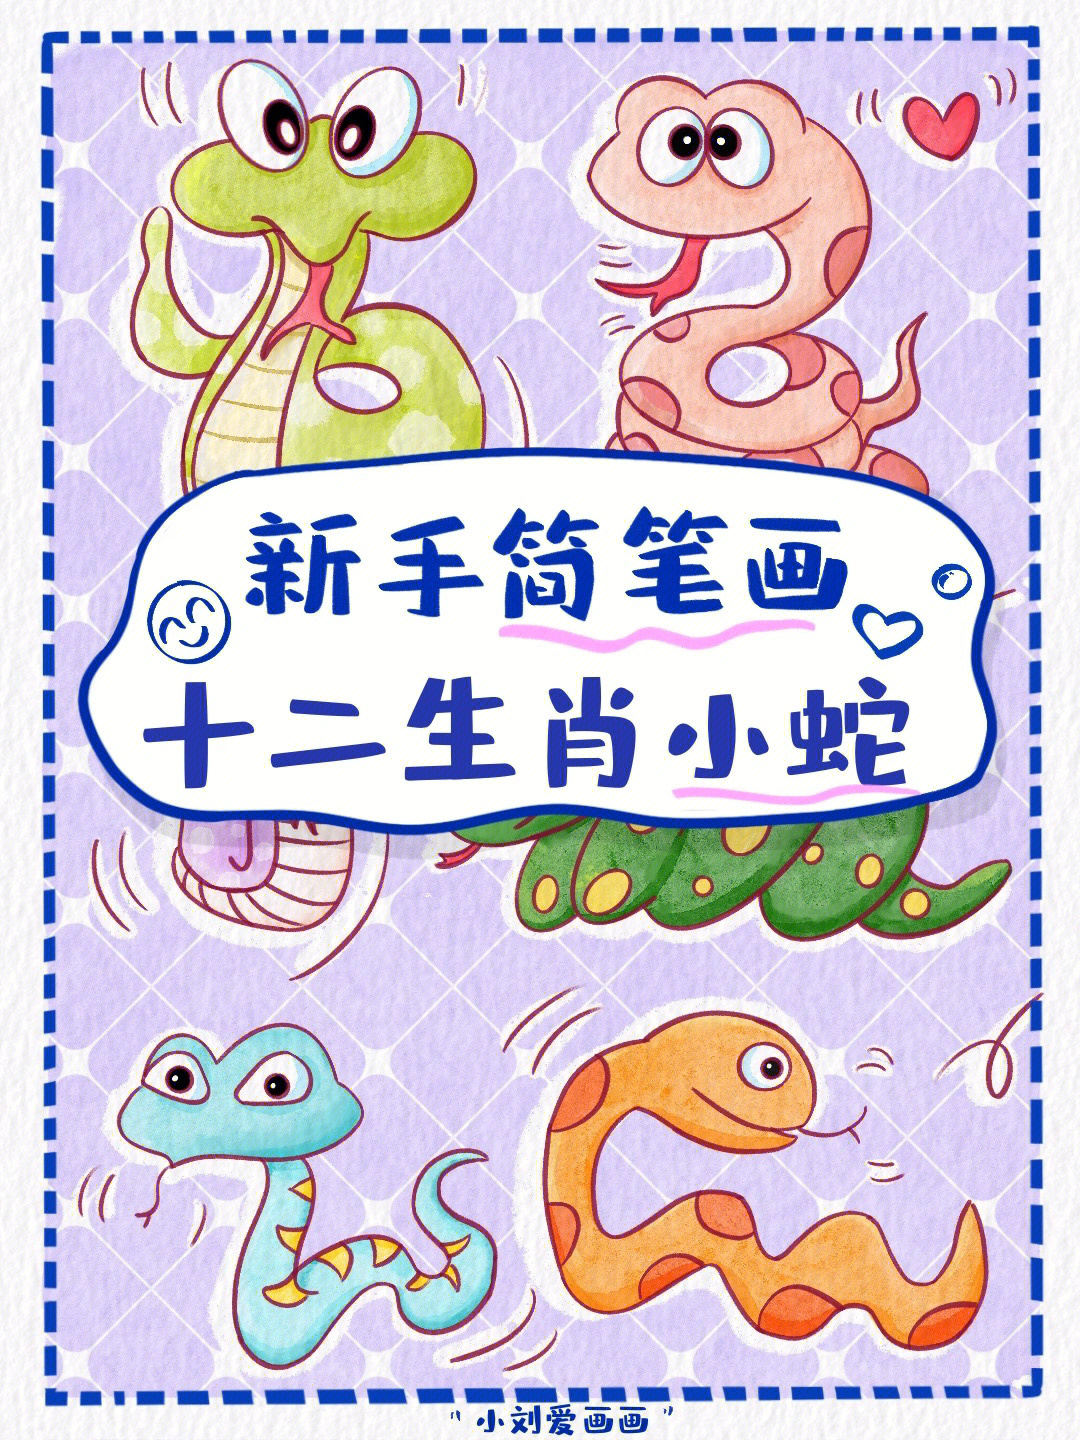 懒人学插画17可爱的小蛇简笔画素材分享